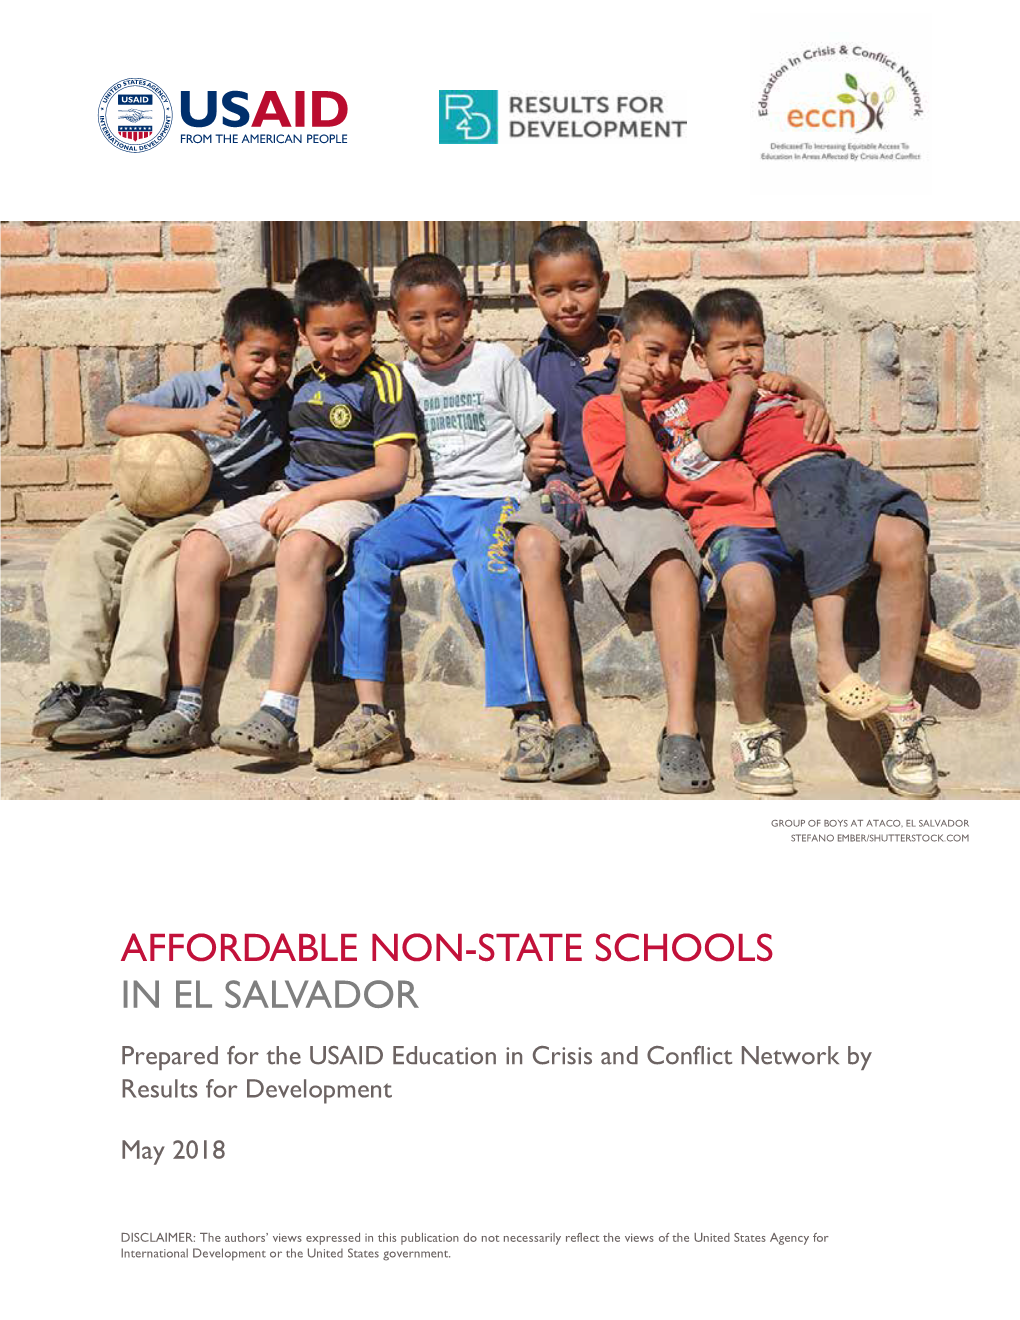 Affordable Non-State Schools in El Salvador: Case Study